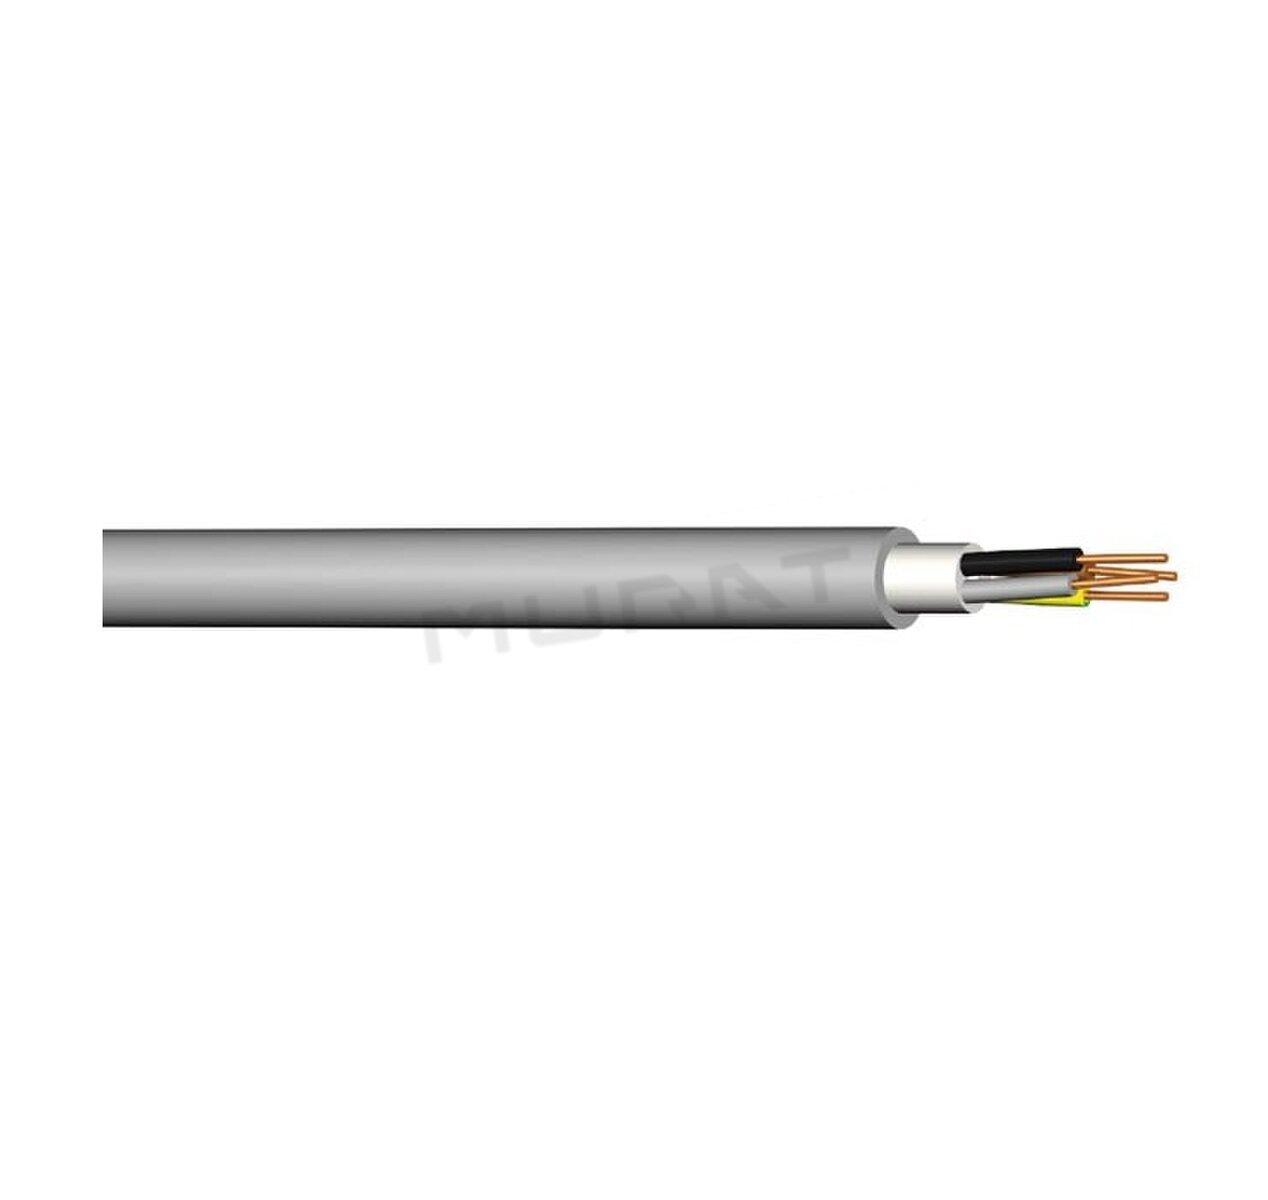 Kábel NYM-O 4x1,5 mm2